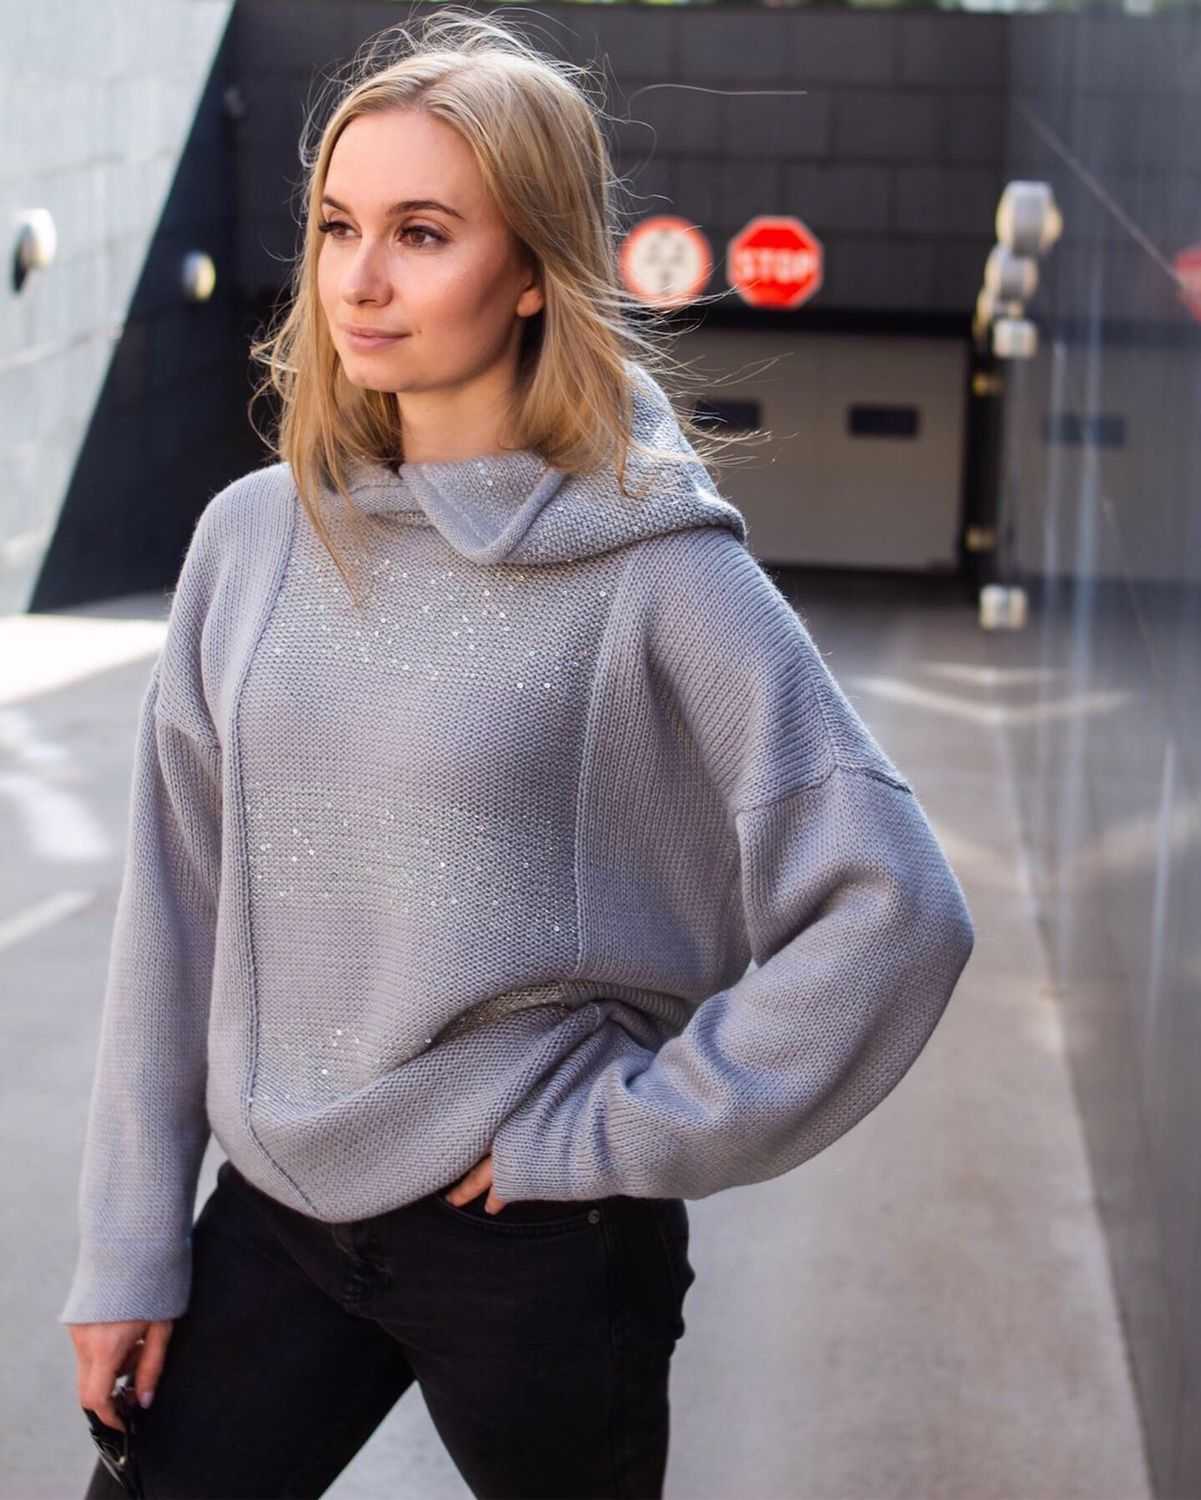 Свитер крупной вязки 2019 - 109 фото модных вязаных свитеров | портал для женщин womanchoice.net